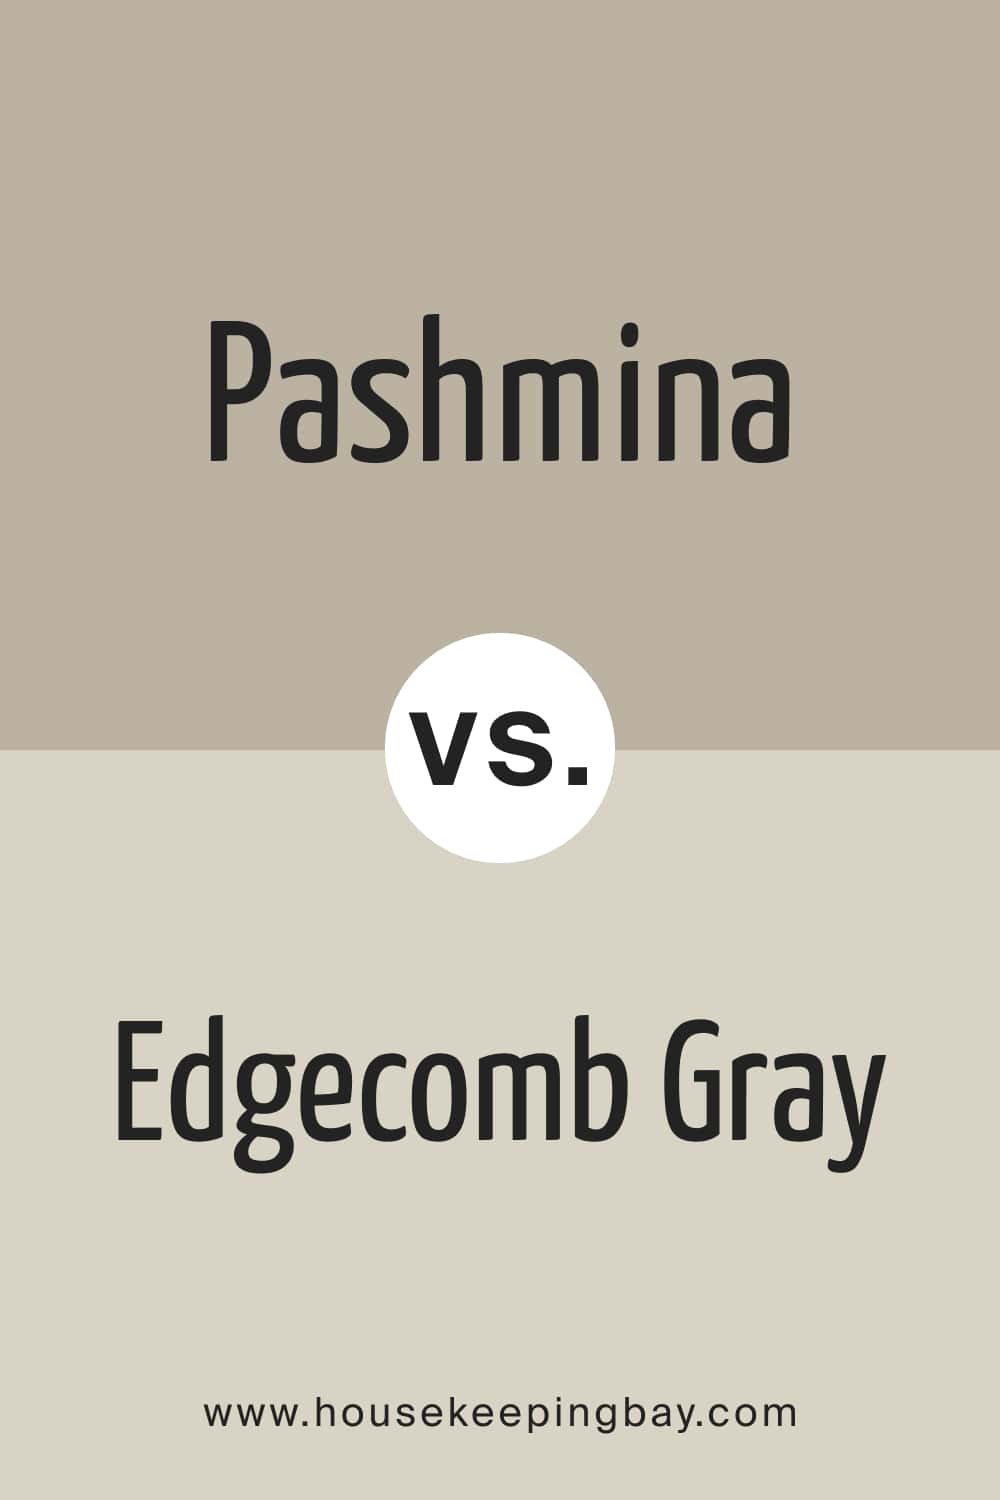 Pashmina vs Edgecomb Gray